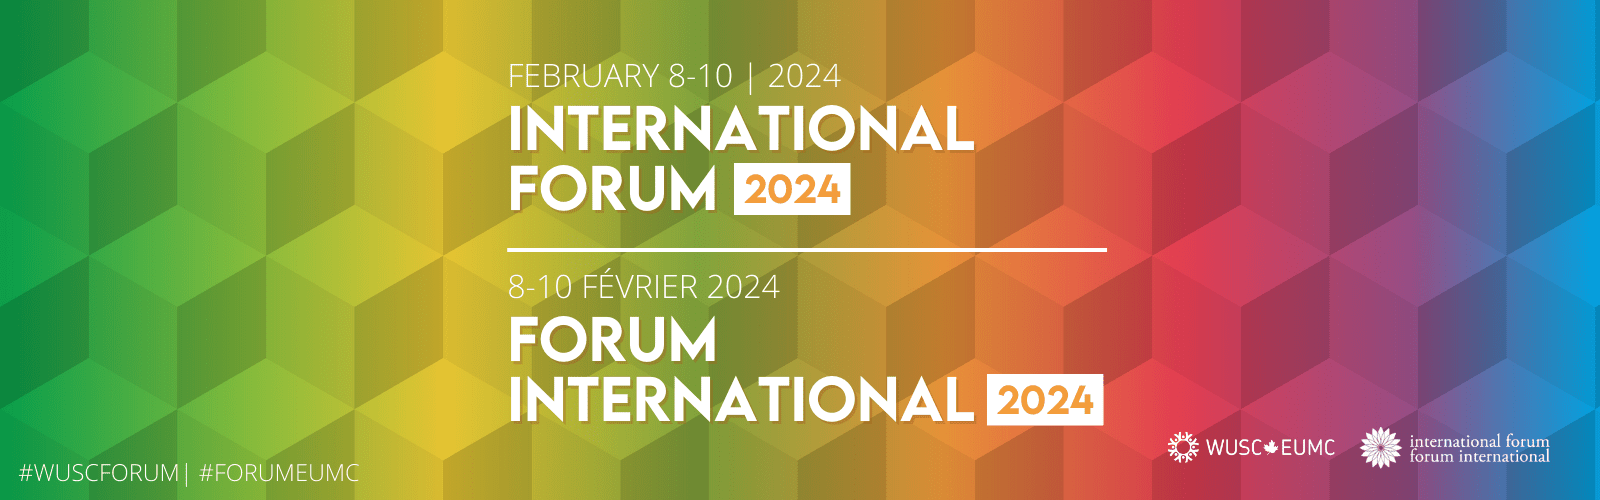 International-Forum-2024-Banner